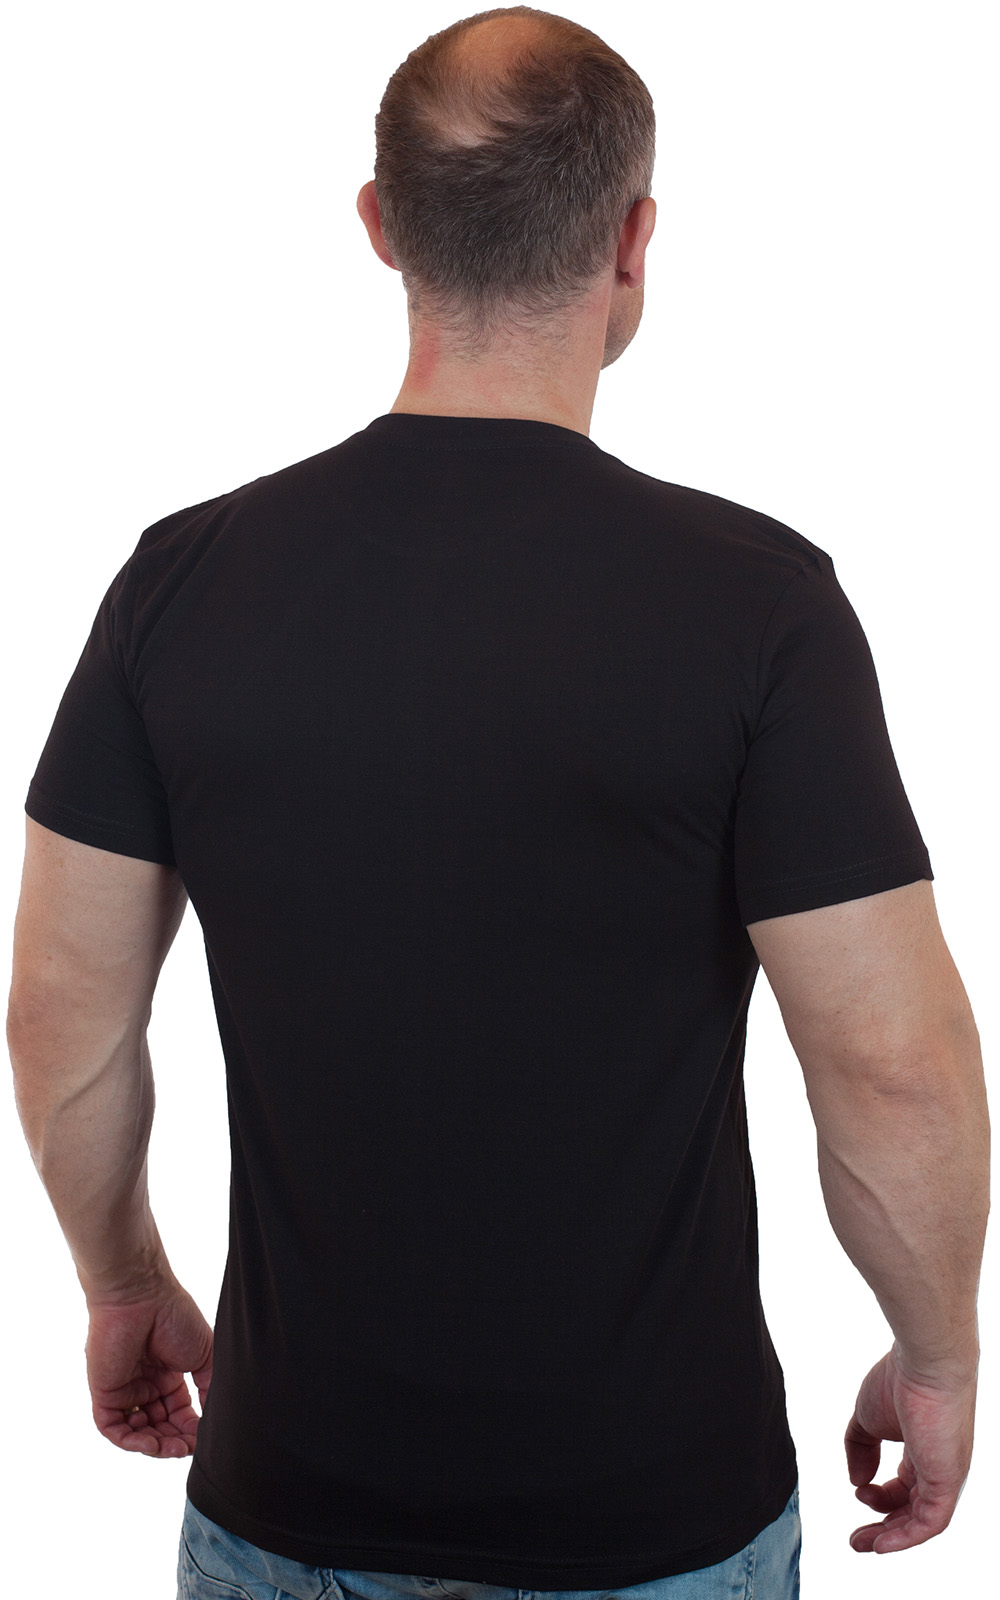 Лаконичная черная футболка с эмблемой ГСВГ 